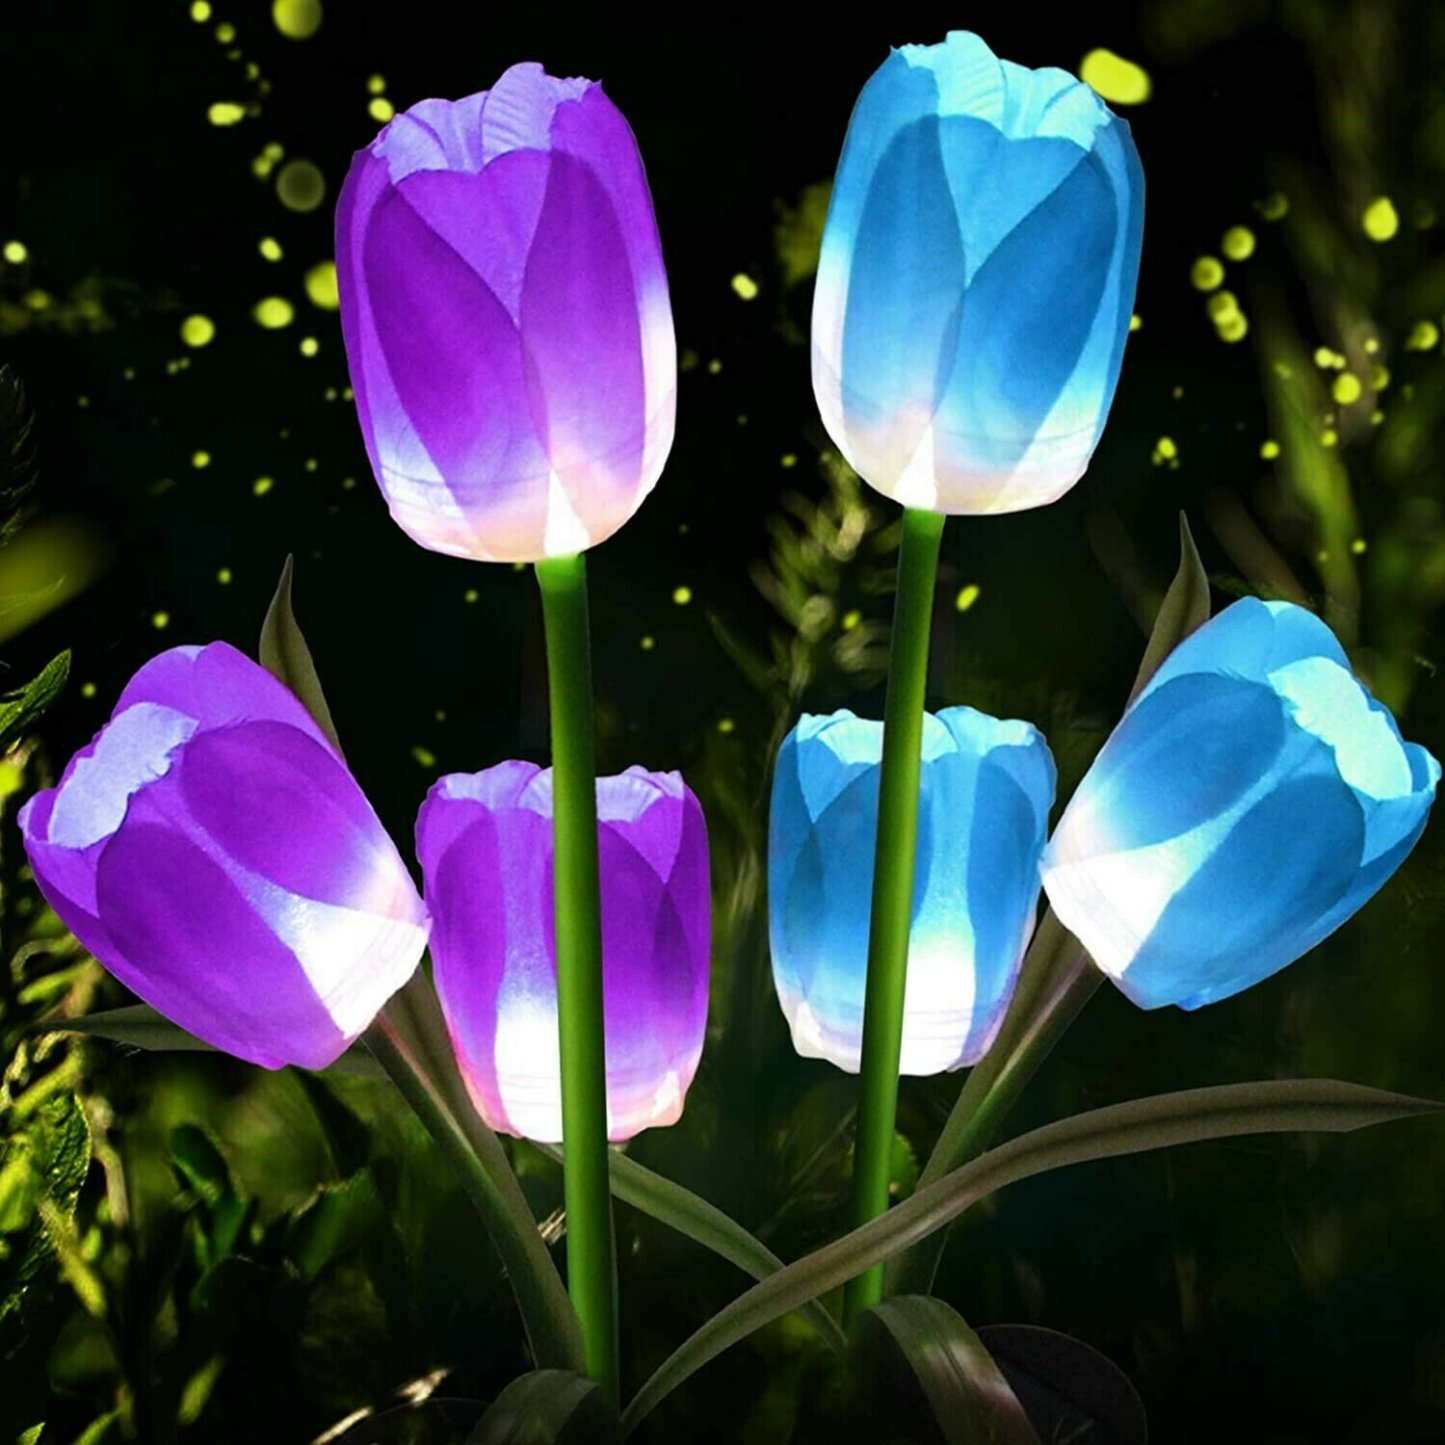 Spring Artificial tulip solar garden spotlight (1 pack of 3 tulips)